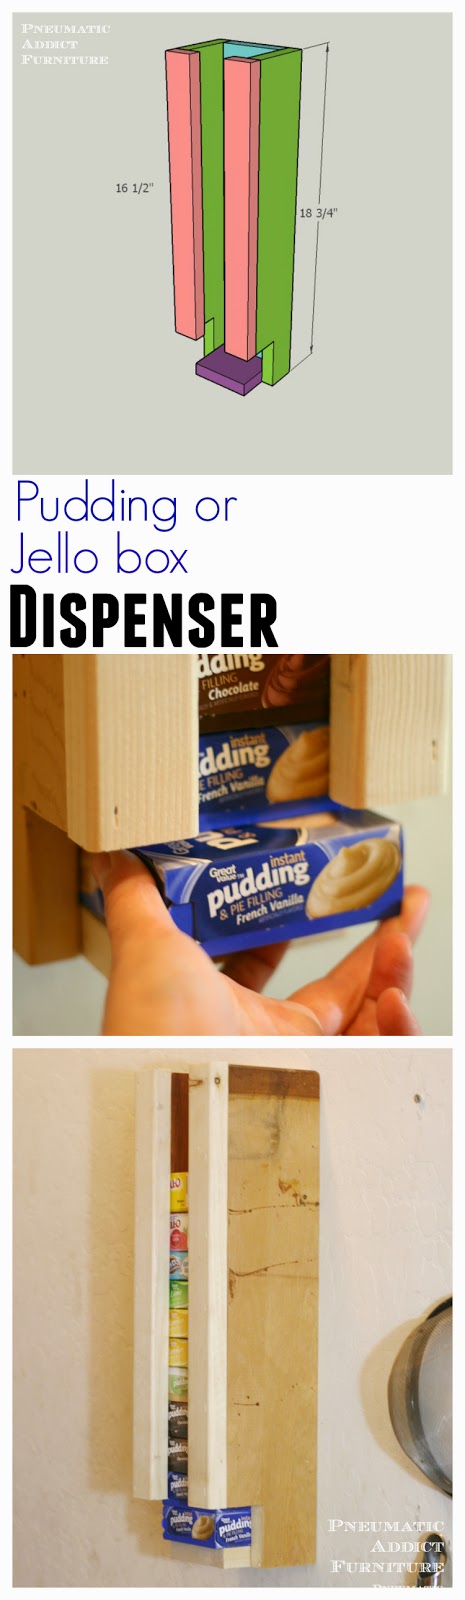 pudding or jello box dispenser